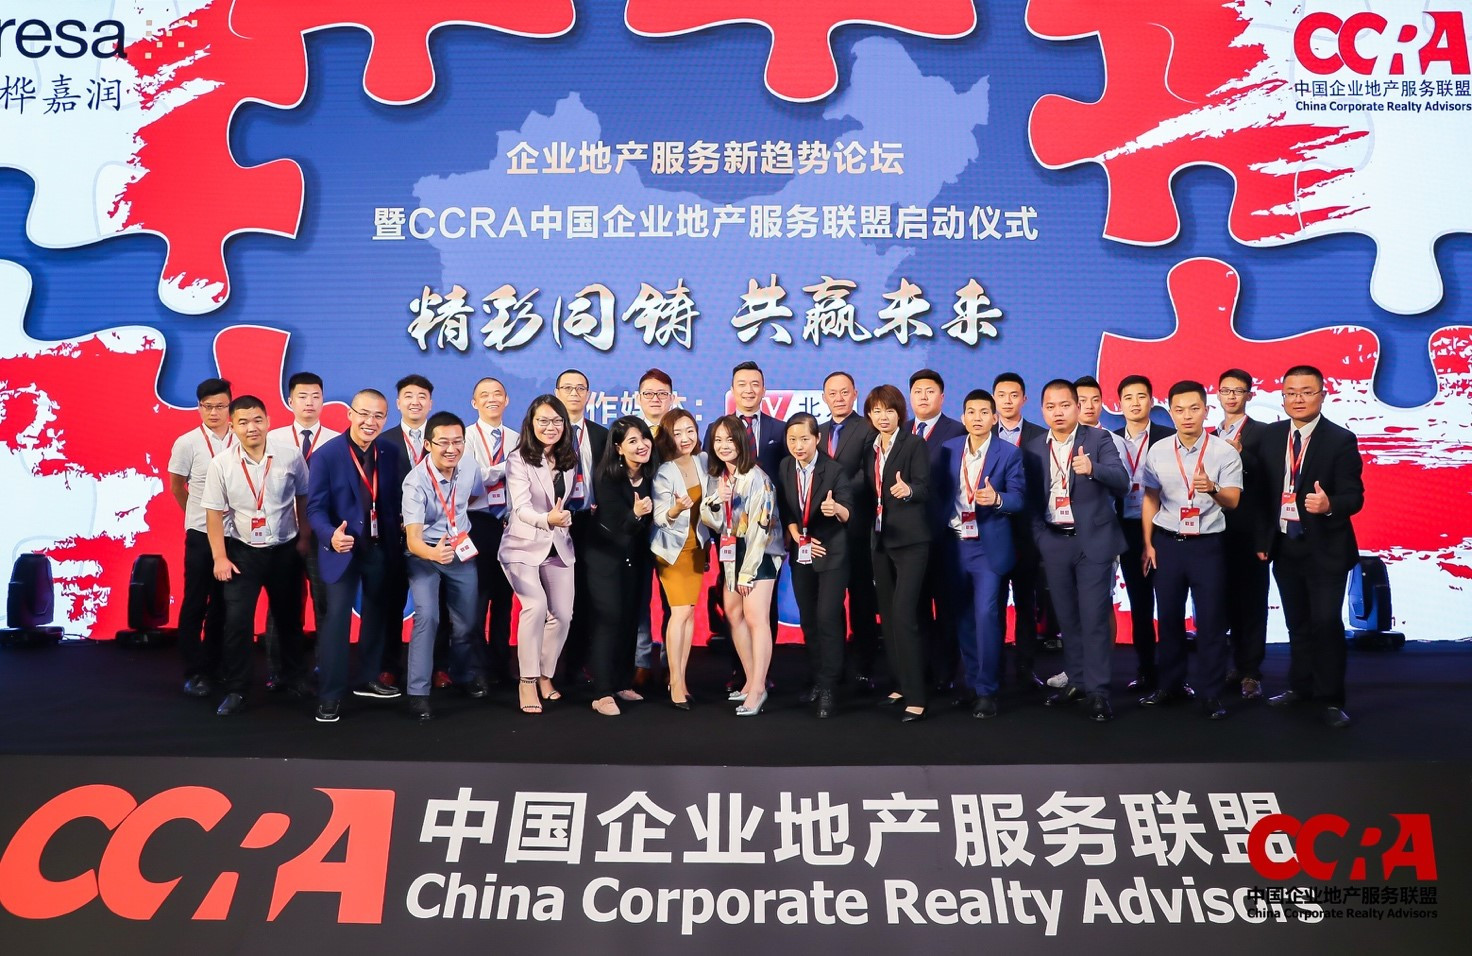 企业地产新趋势论坛暨CCRA中国企业地产服务联盟启动仪式顺利举行